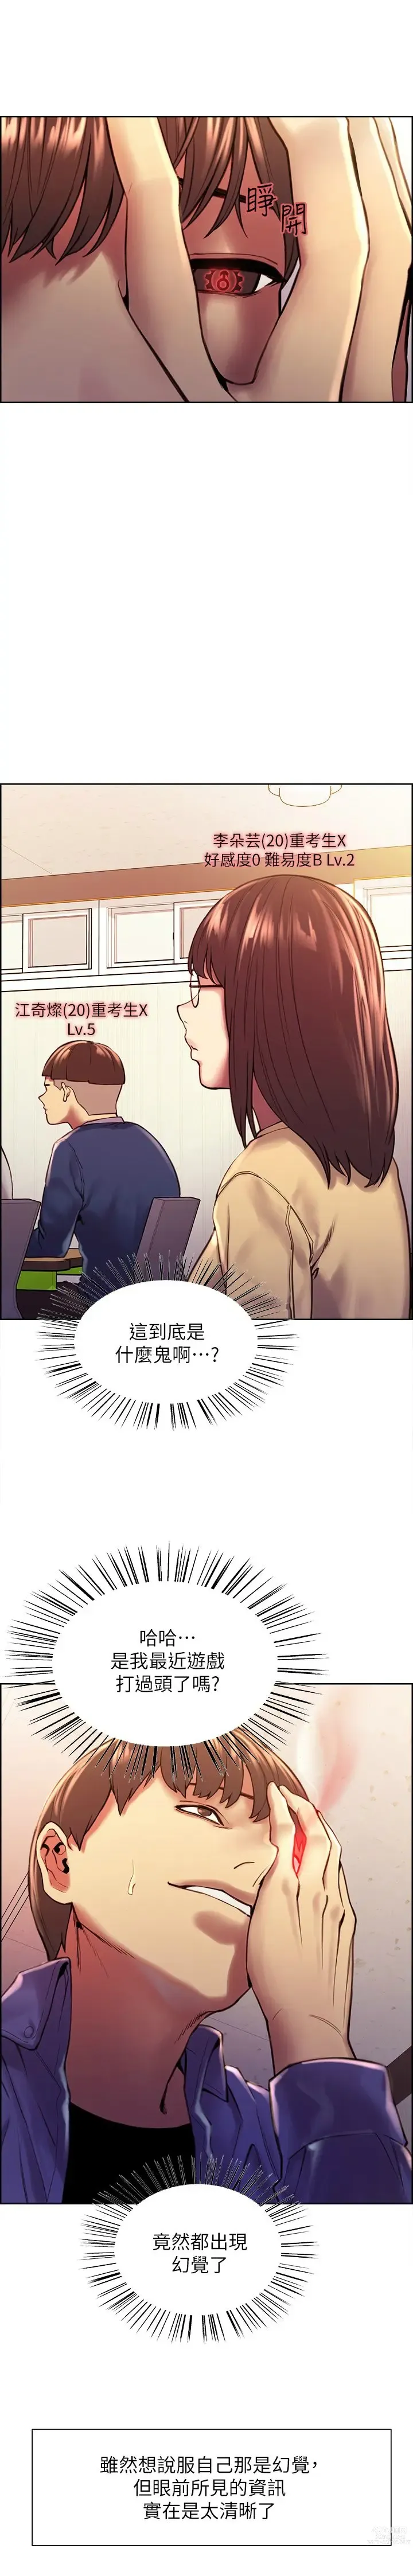 Page 10 of manga 色轮眼/ Sex Stopwatch